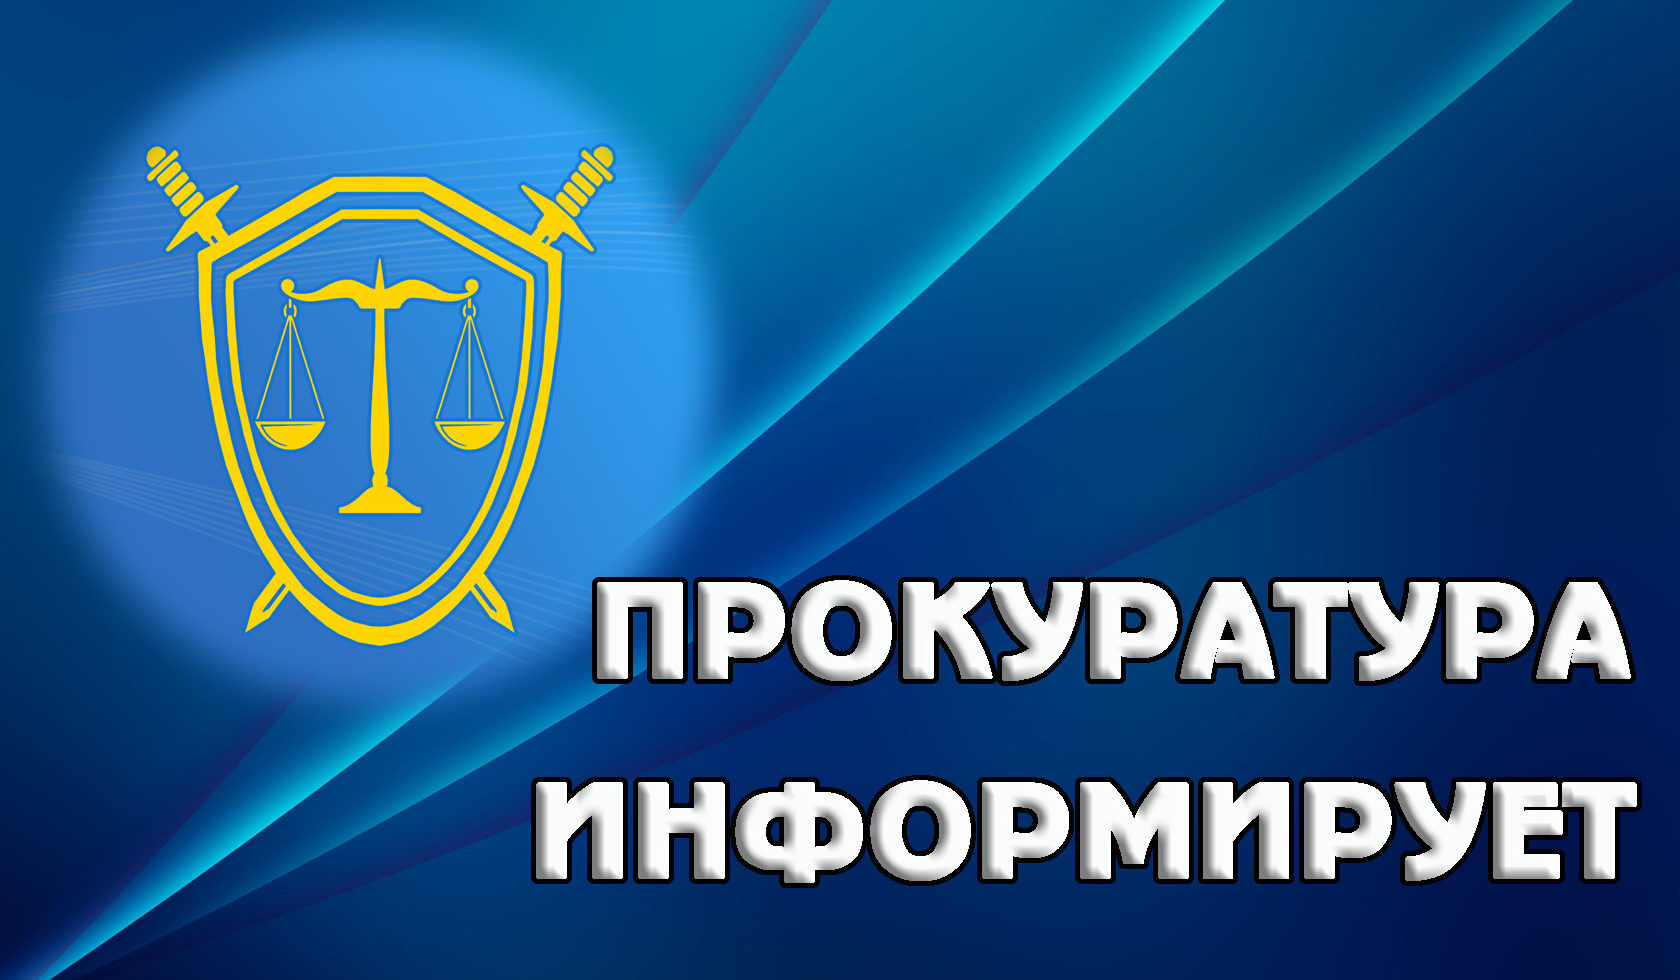 Прокуратура Засвияжского района г. Ульяновска разъясняет требования федерального законодательства о противодействии коррупции при реализации закупок товаров, работ и услуг для государственных и муниципальных нужд.